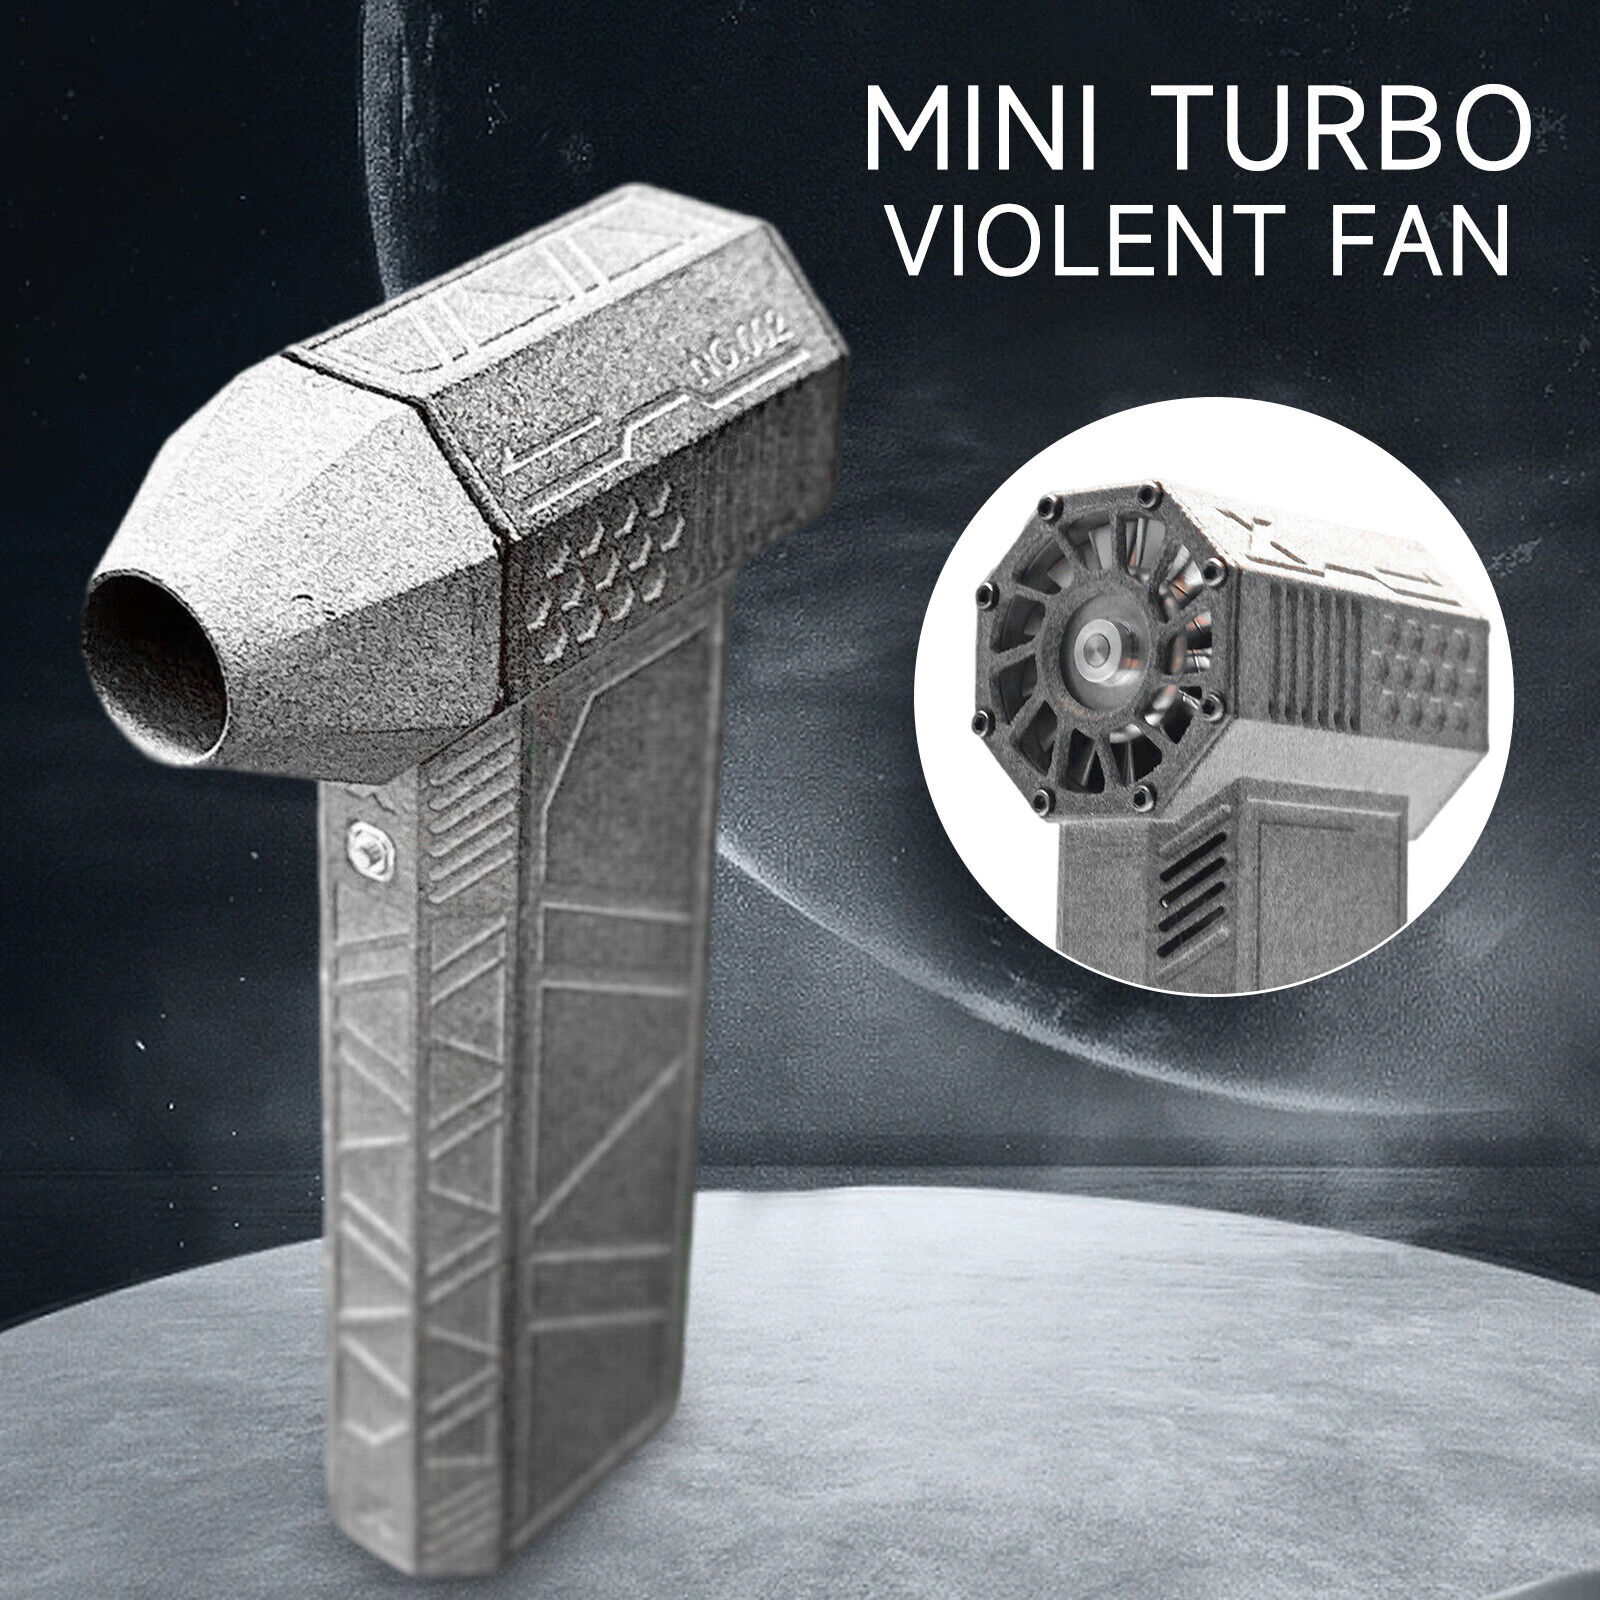 120000RPM 45m/s Mini Turbo Jet Fan Turbo Violent Fan Handheld Build-in Battery